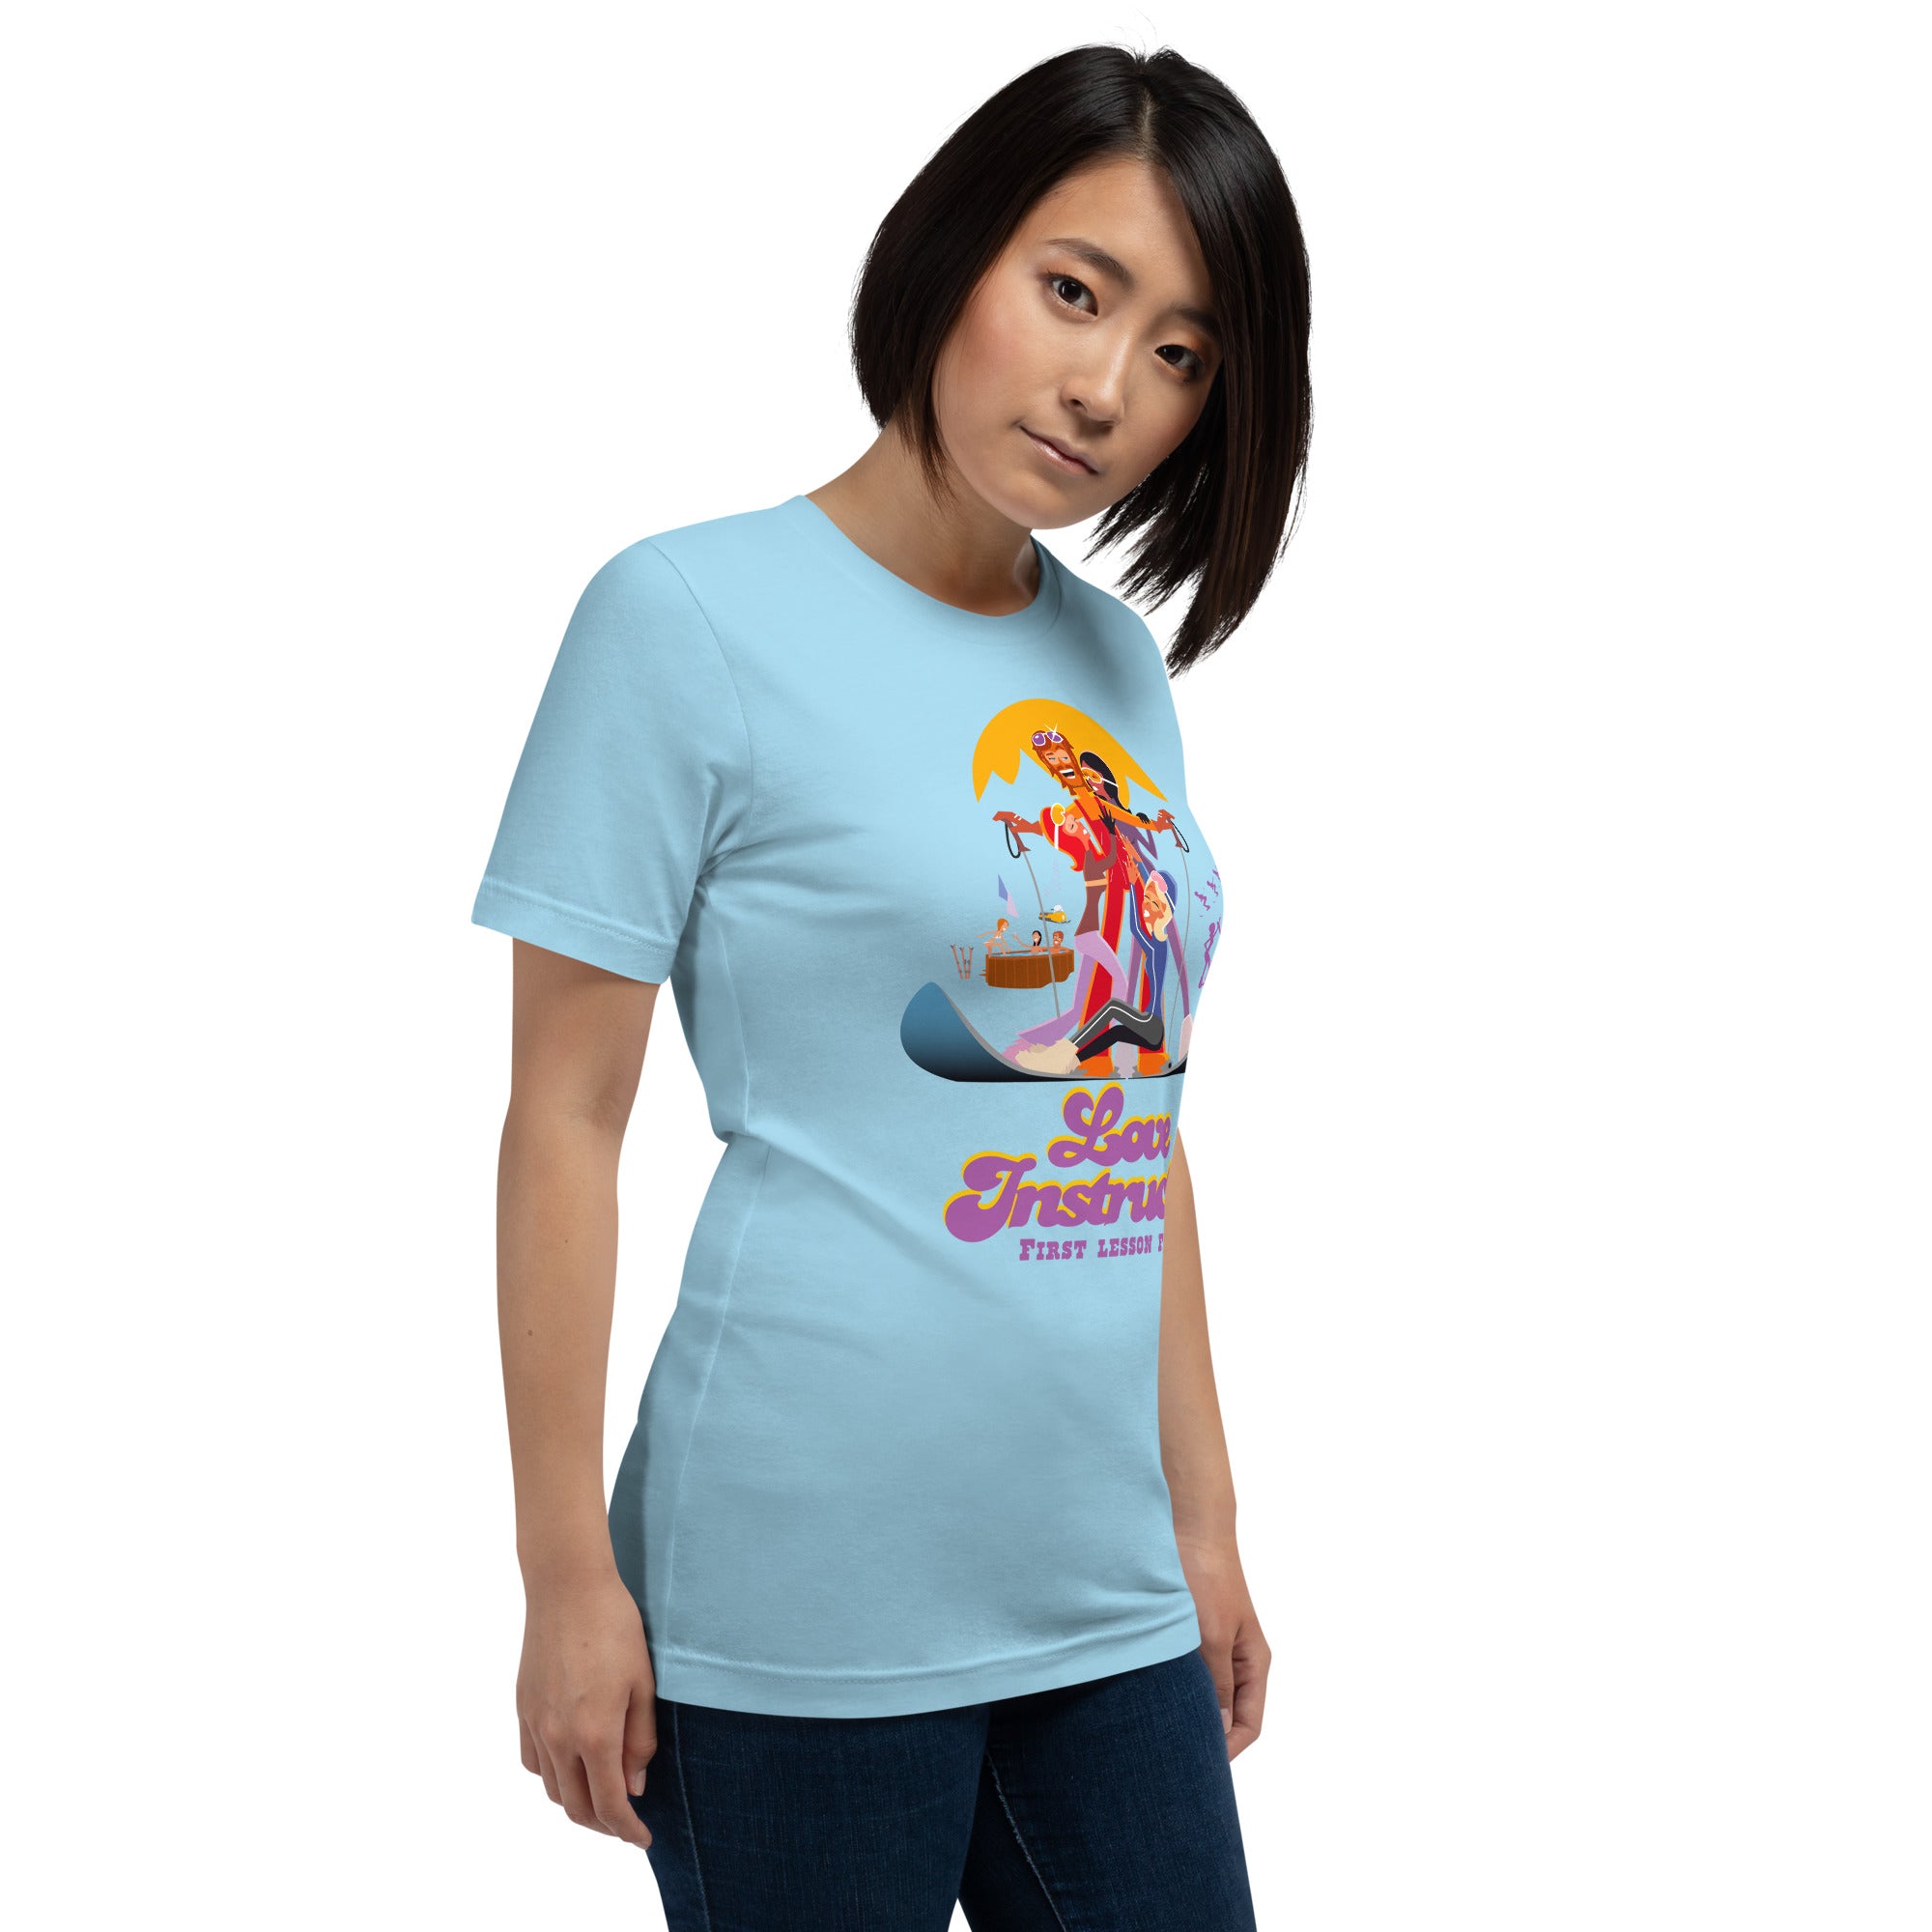 T-shirt en coton unisexe Love instructor First lesson free sur couleurs vives